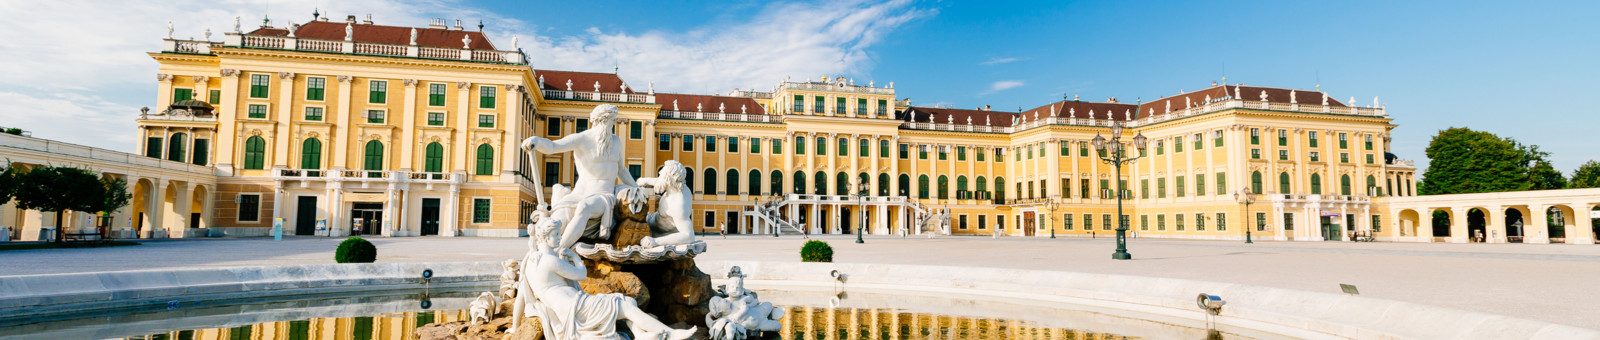     Schönbrunn palace / Schloß Schönbrunn